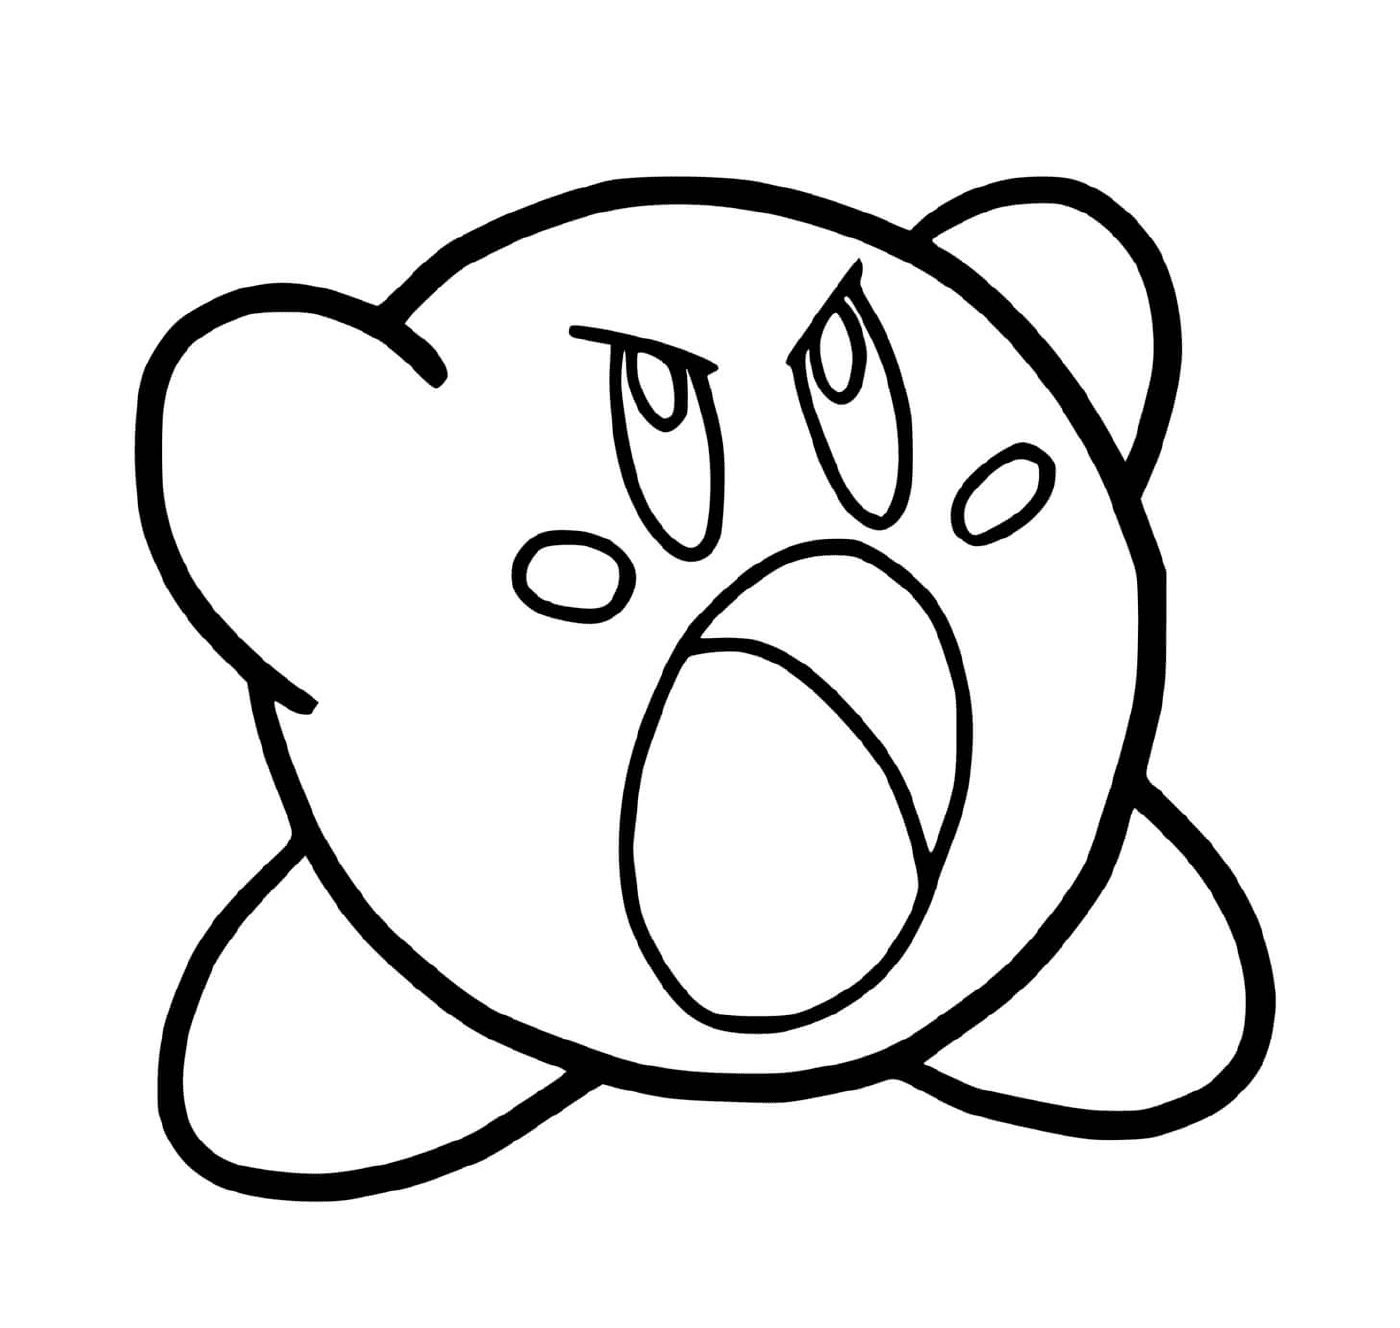  Kirby está enojado 